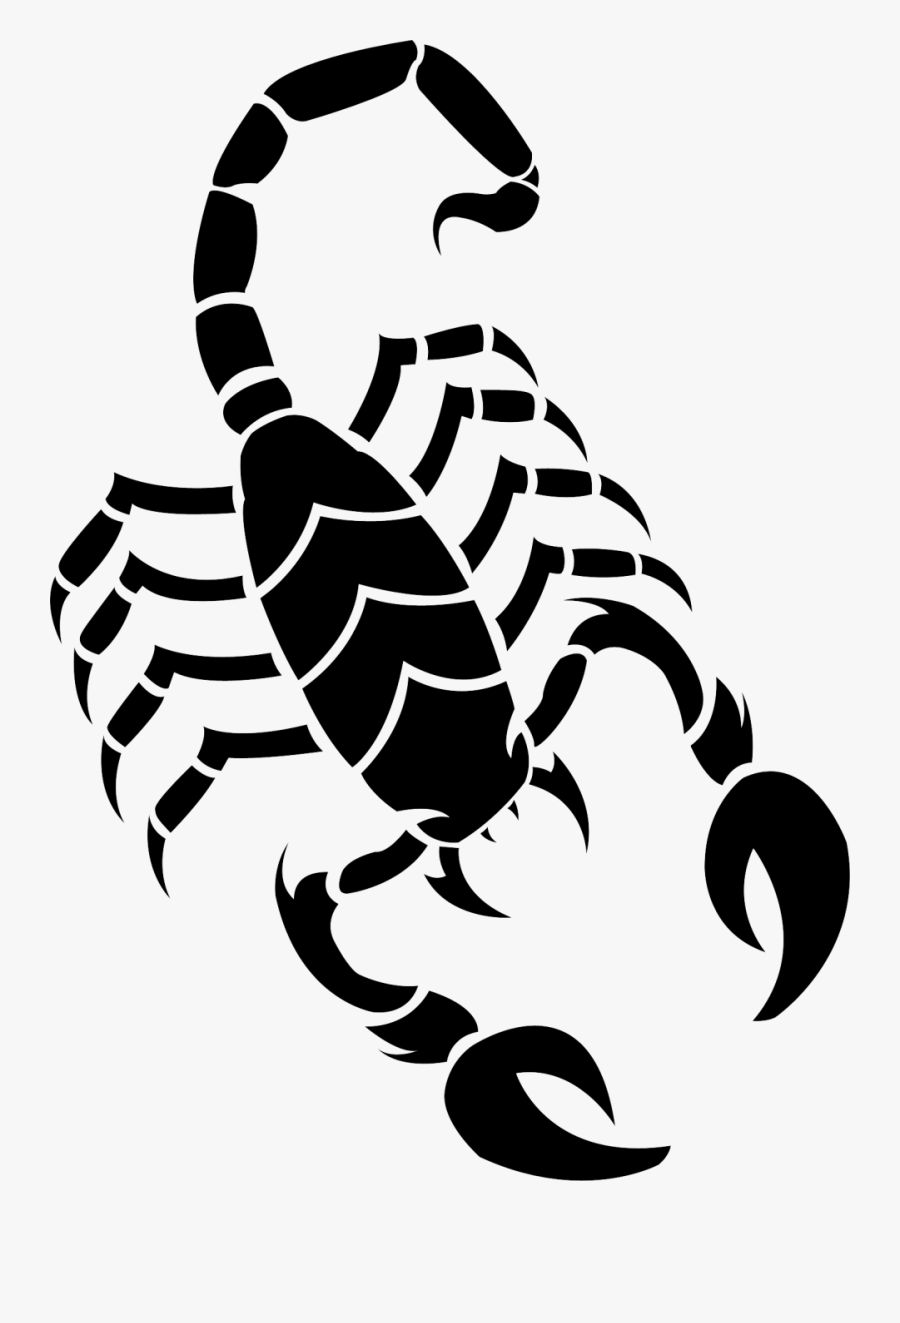 Scorpion Png Image - Transparent Background Scorpion Png, Transparent Clipart